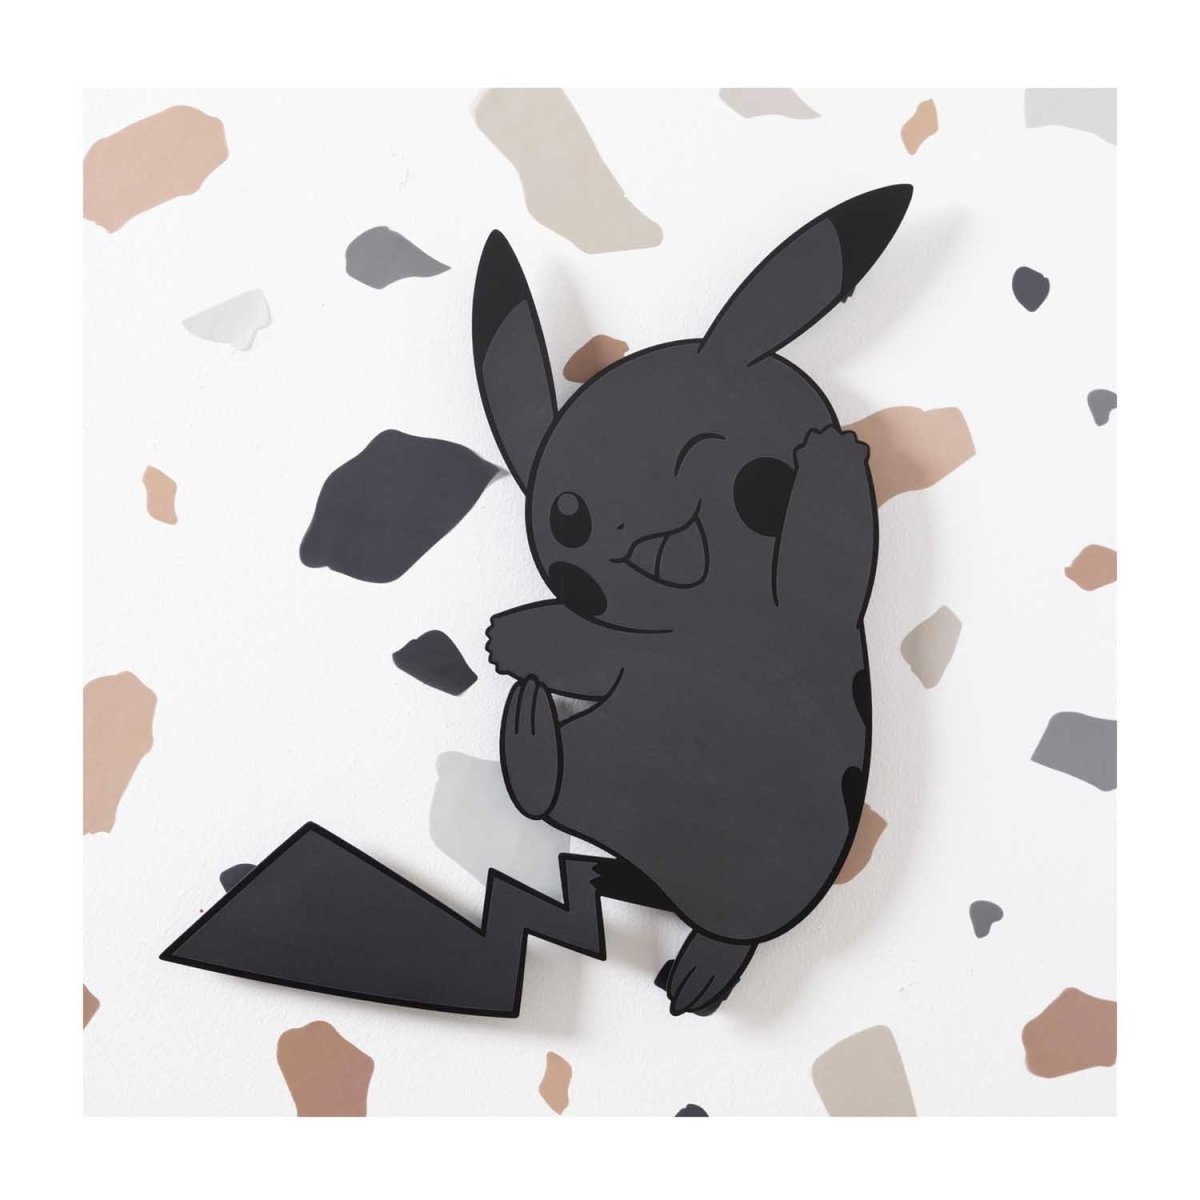 Pikachu Sitting Pokemon Decal / Sticker Die cut